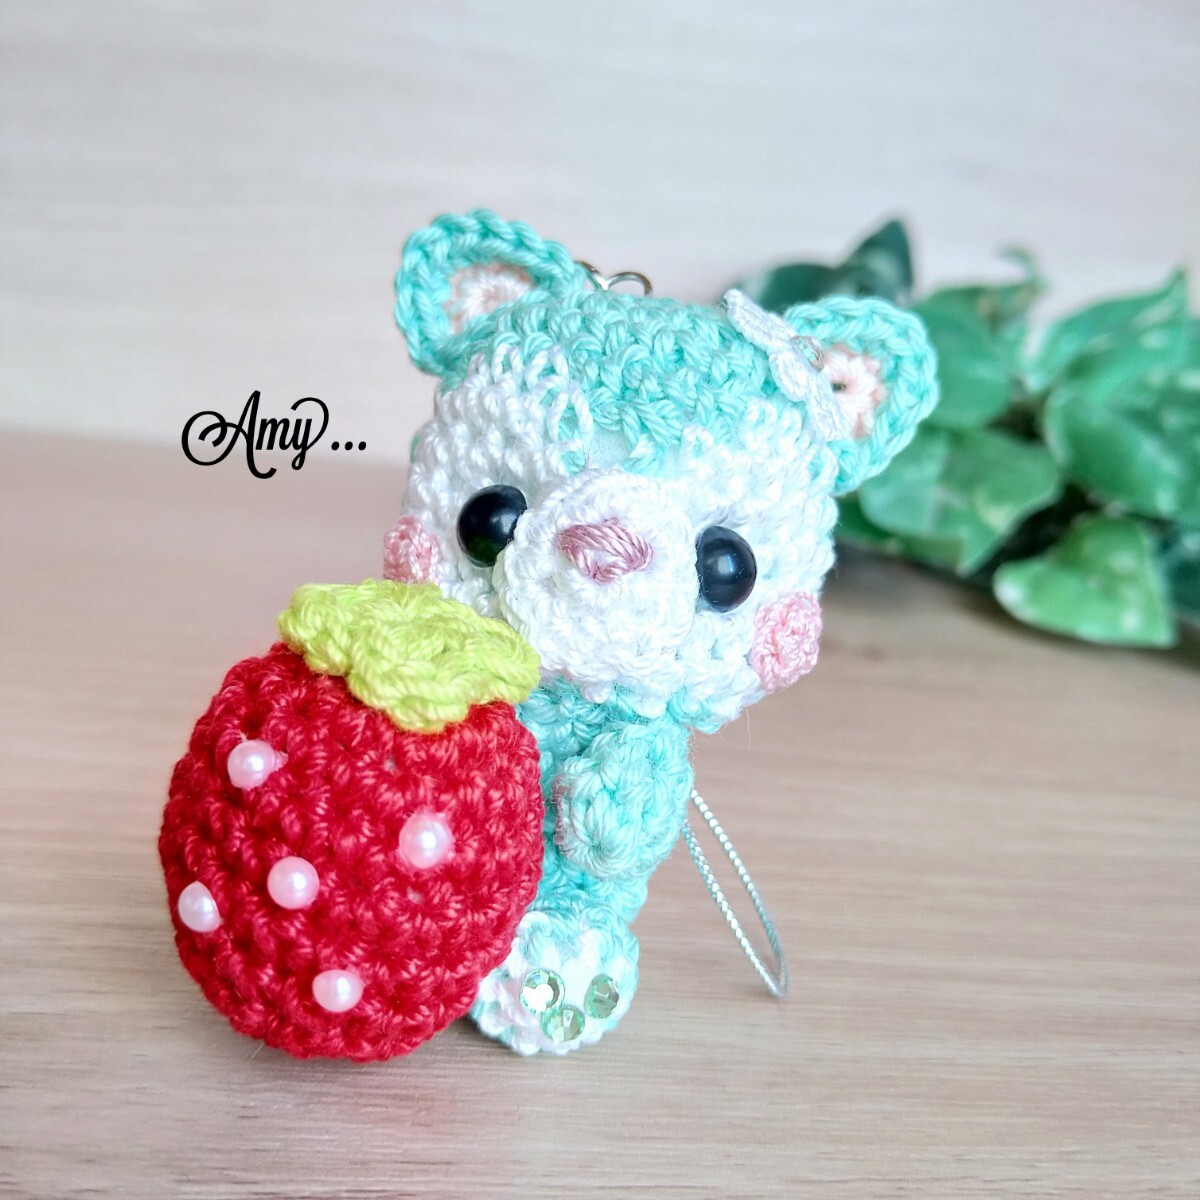 ■Amy... Amigurumi Plump Pearl Strawberry Hug★Strap♪ Blau Grün Kostenloser Versand Handmade♪, Spielzeug, Spiel, Plüschtier, Amigurumi